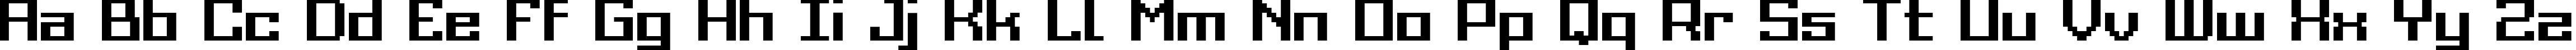 Пример написания английского алфавита шрифтом Grixel Acme 9 Regular Bold